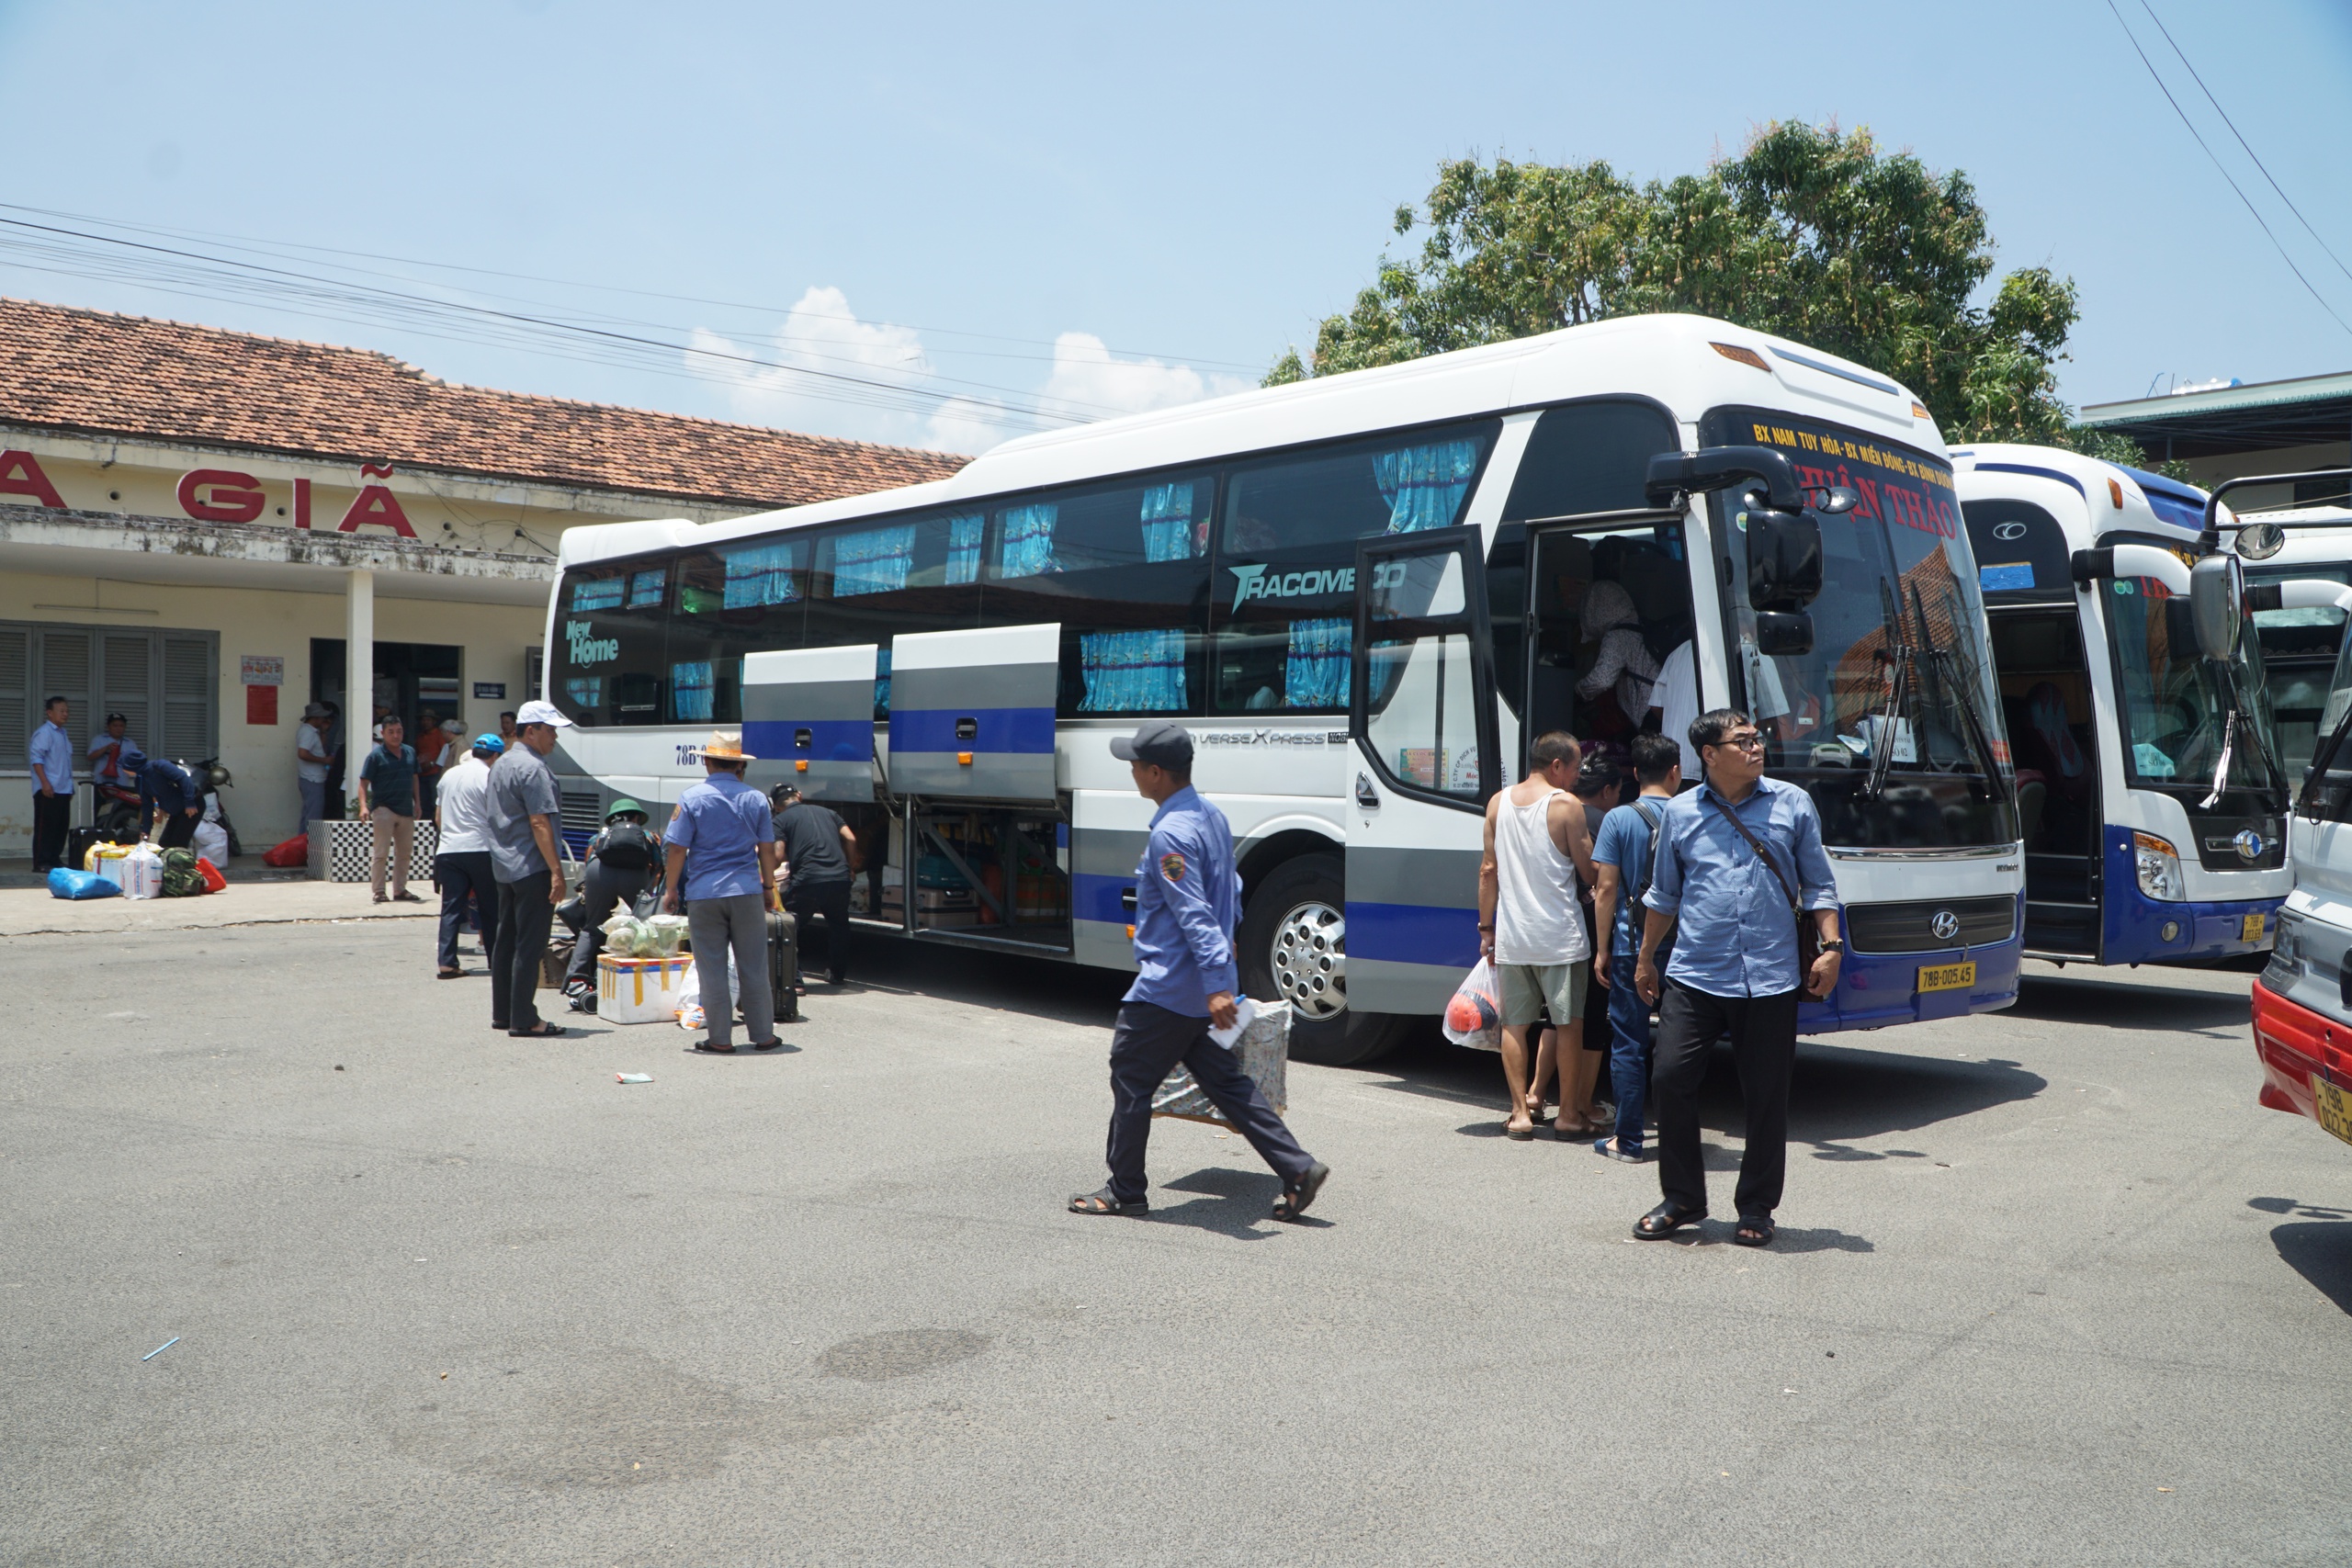 Ông Trần Văn Duy, Trưởng phòng chăm sóc khách hàng chi nhánh vận tải đường sắt Nha Trang, cho biết từ hôm qua đến nay đã chuyển được 12 đoàn, ước 3.695 lượt hành khách. 